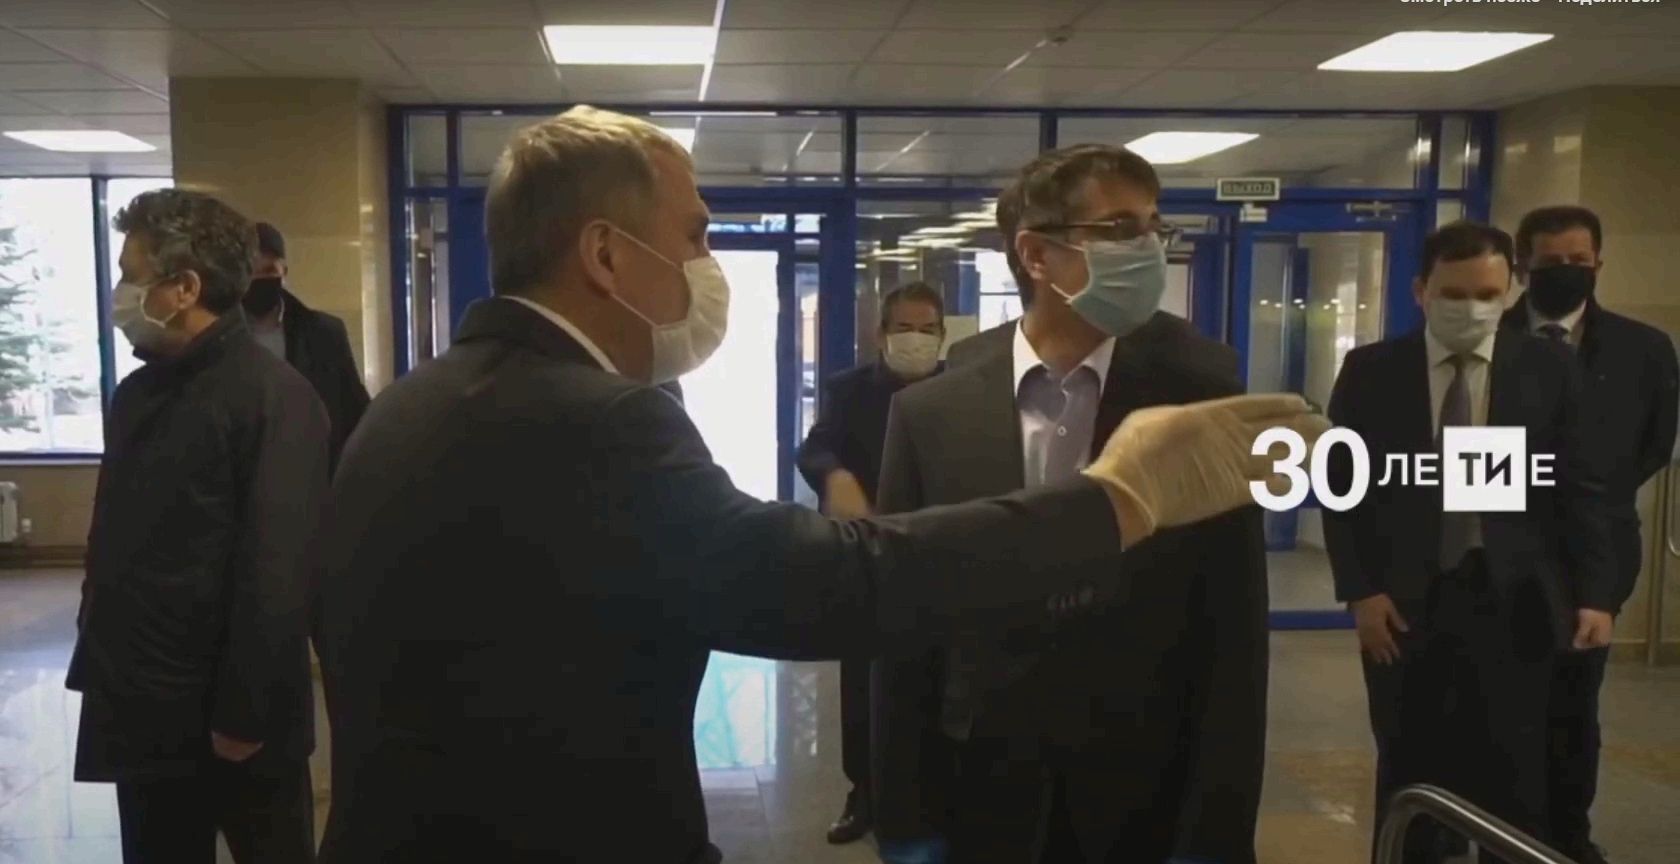 Рустам Минниханов проверил, как борются с распространением коронавируса в Альметьевске